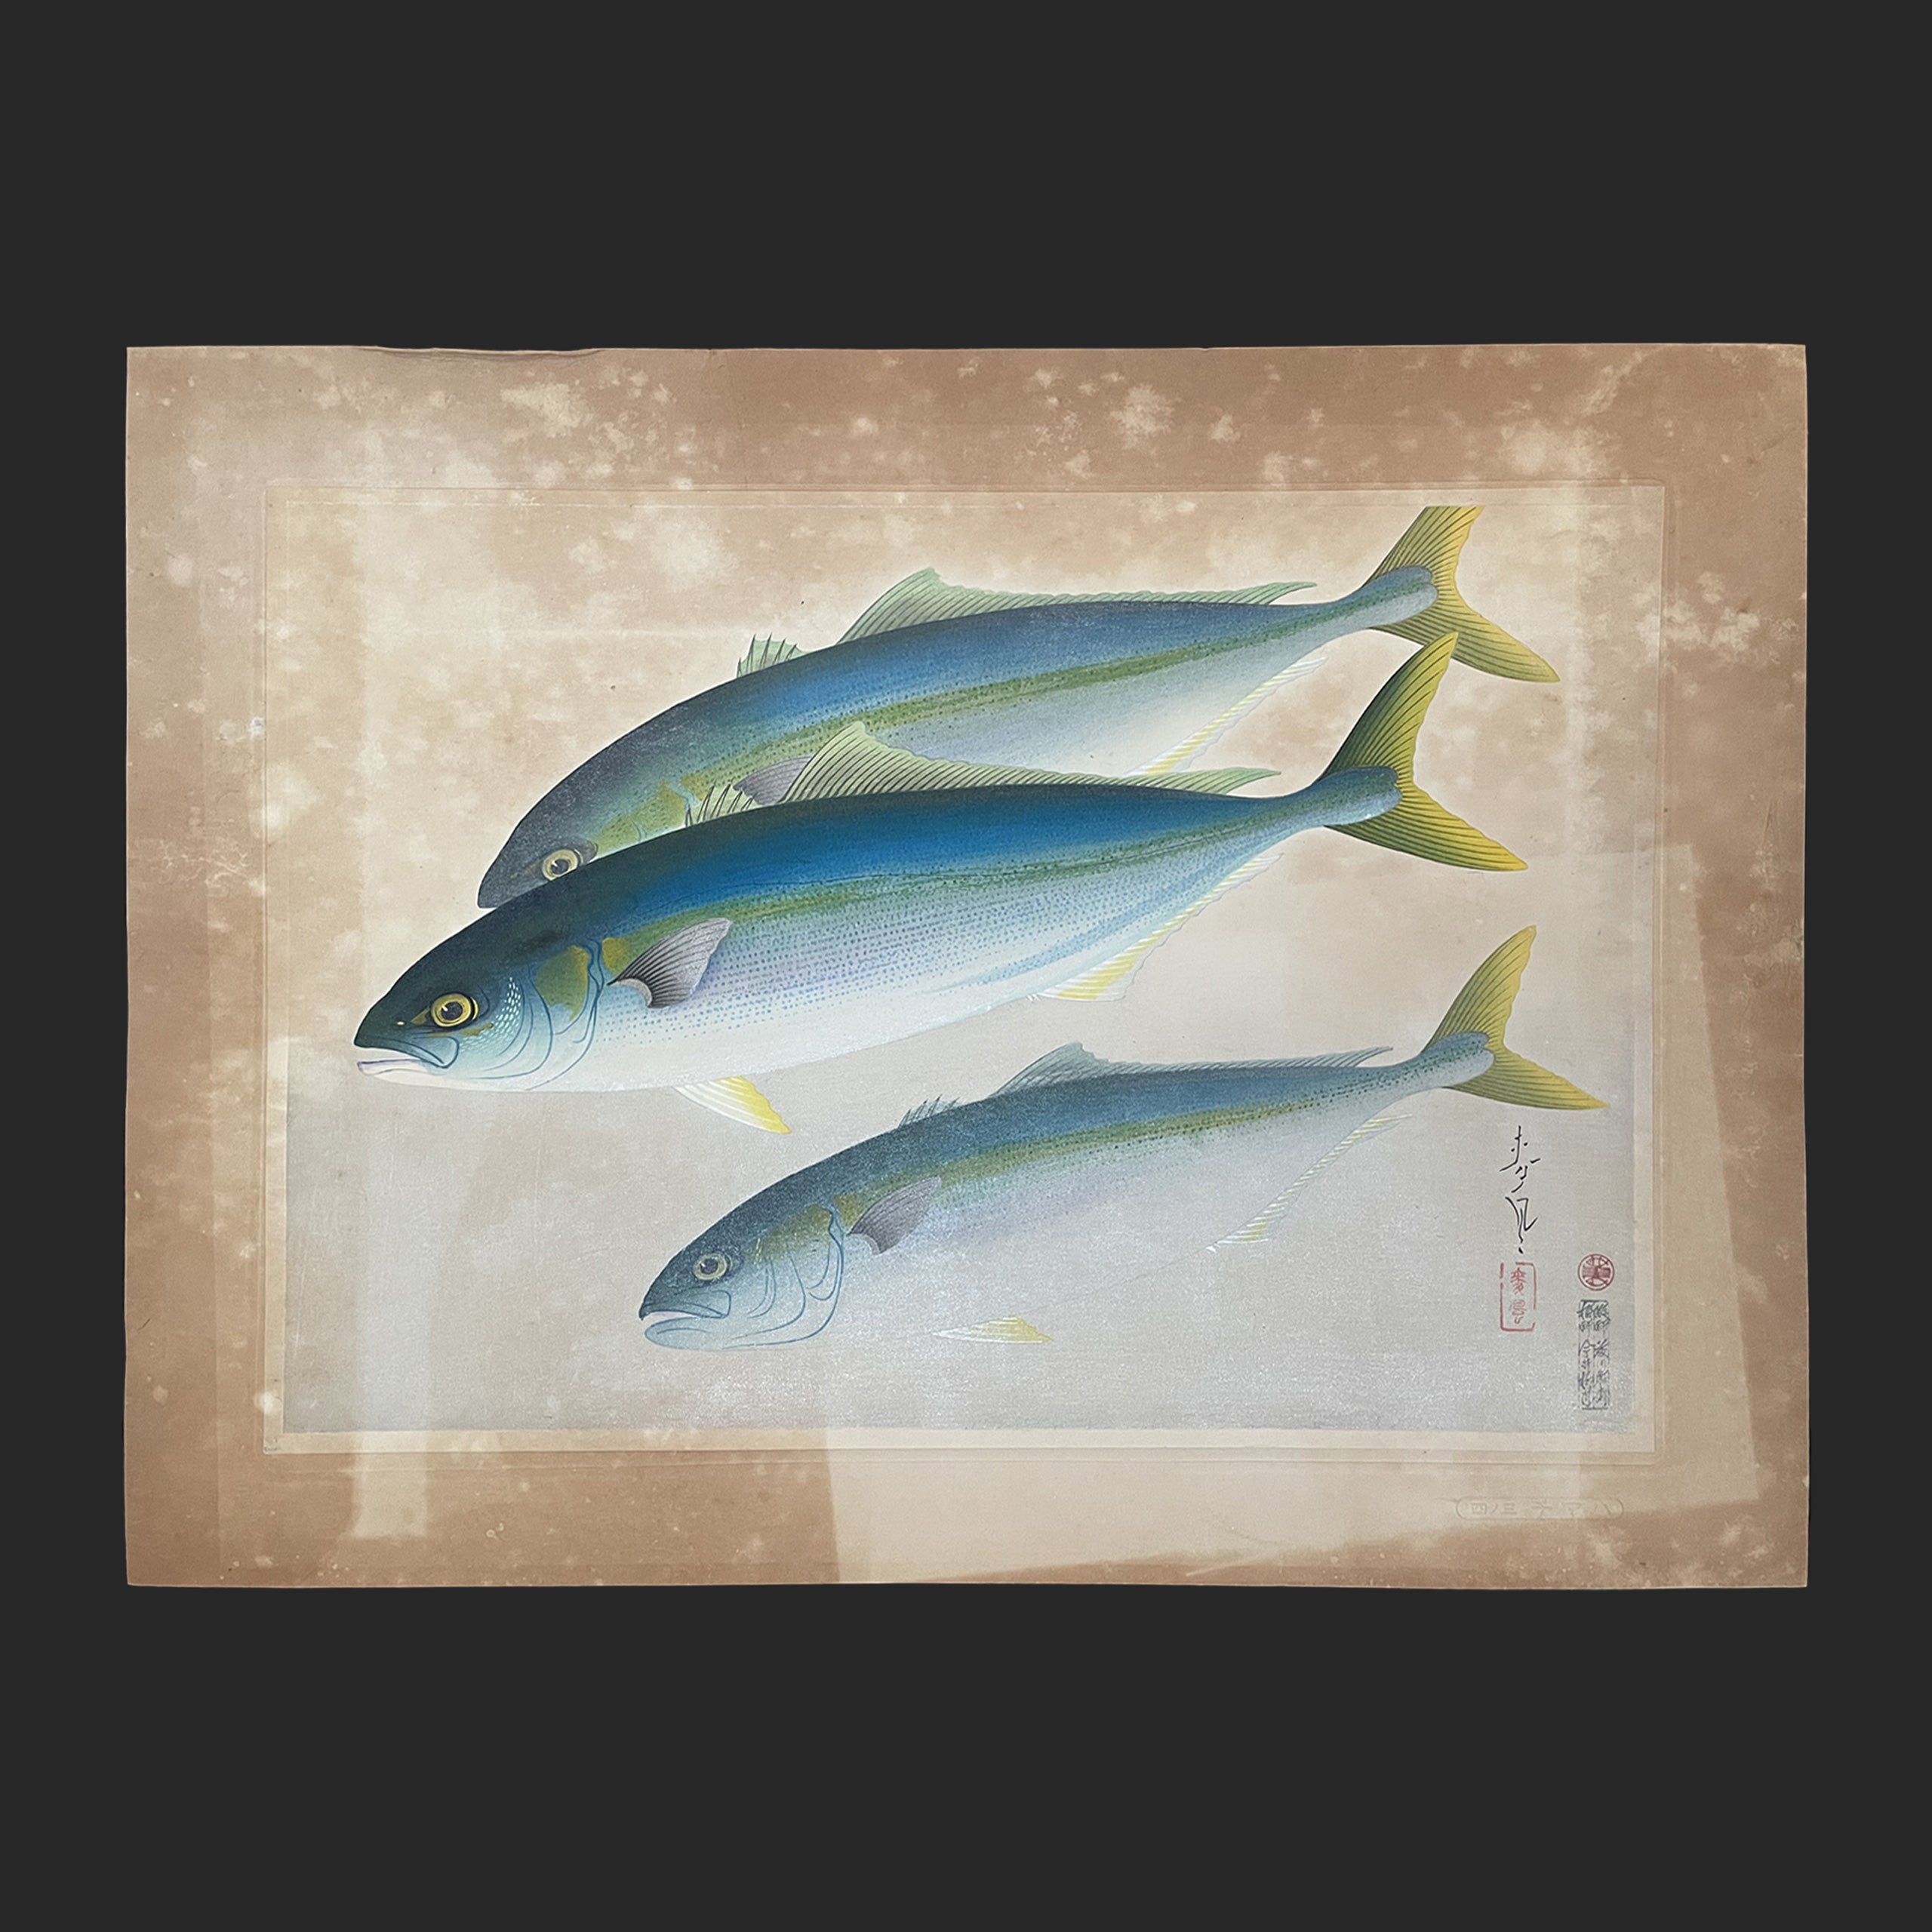 大野 麦風 ONO Bakufu 大日本魚類画集より「ハマチ」